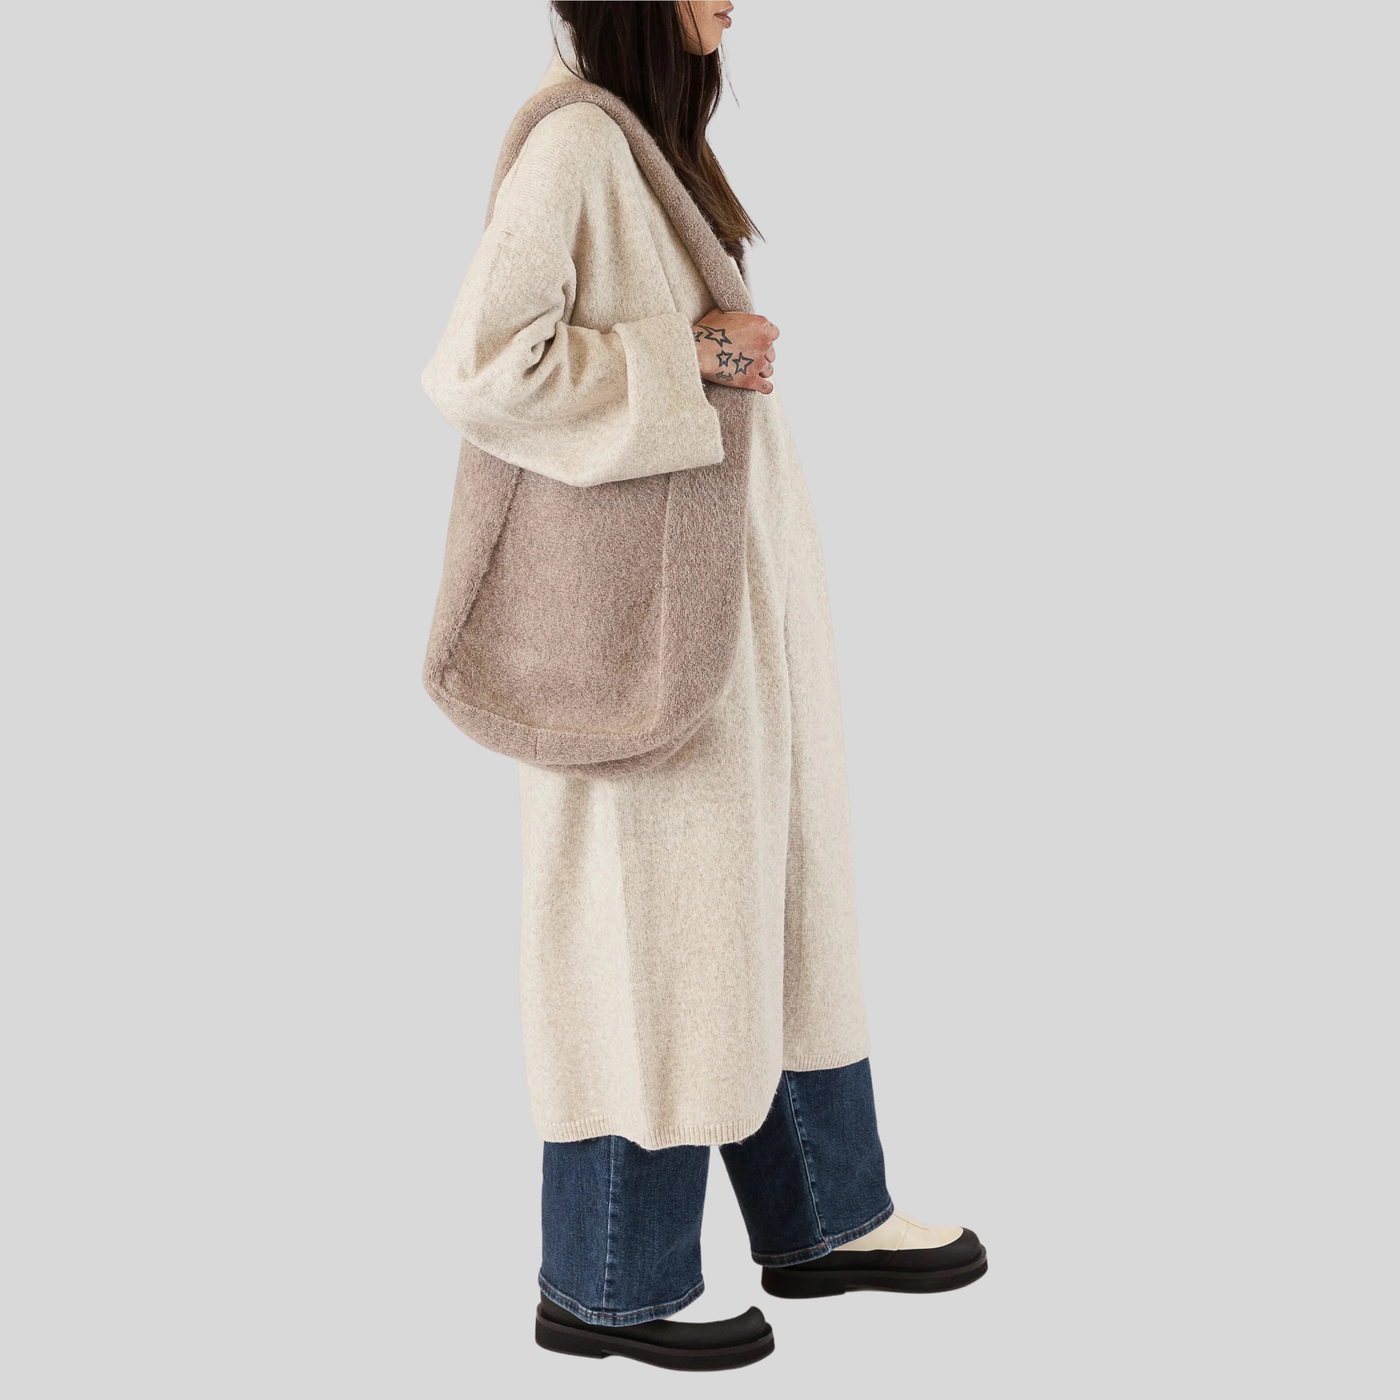 Gotstyle Fashion - Lyla & Luxe Bags Knit Tote Bag - Tan